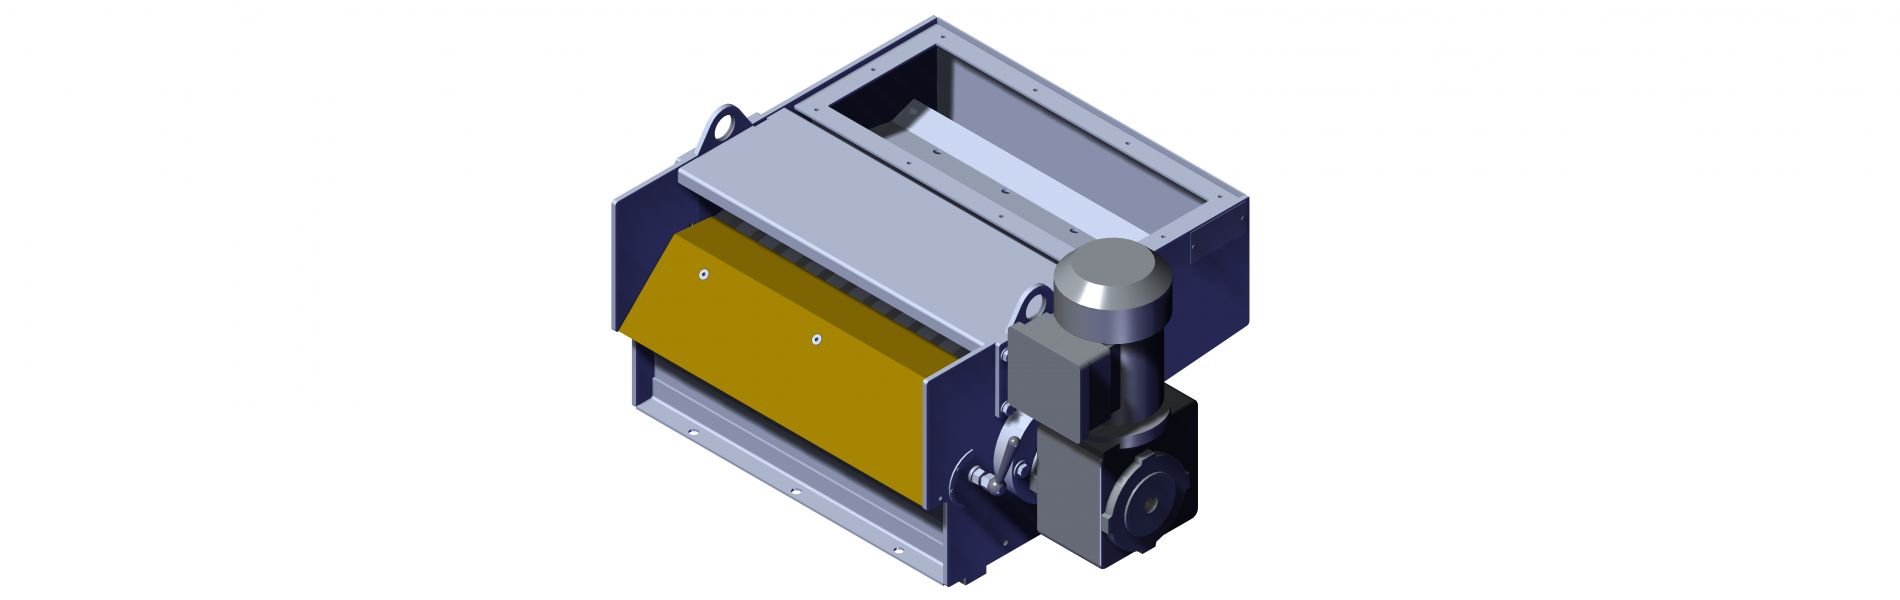 NSM Magnettechnik - Filter- und Separieranlagen